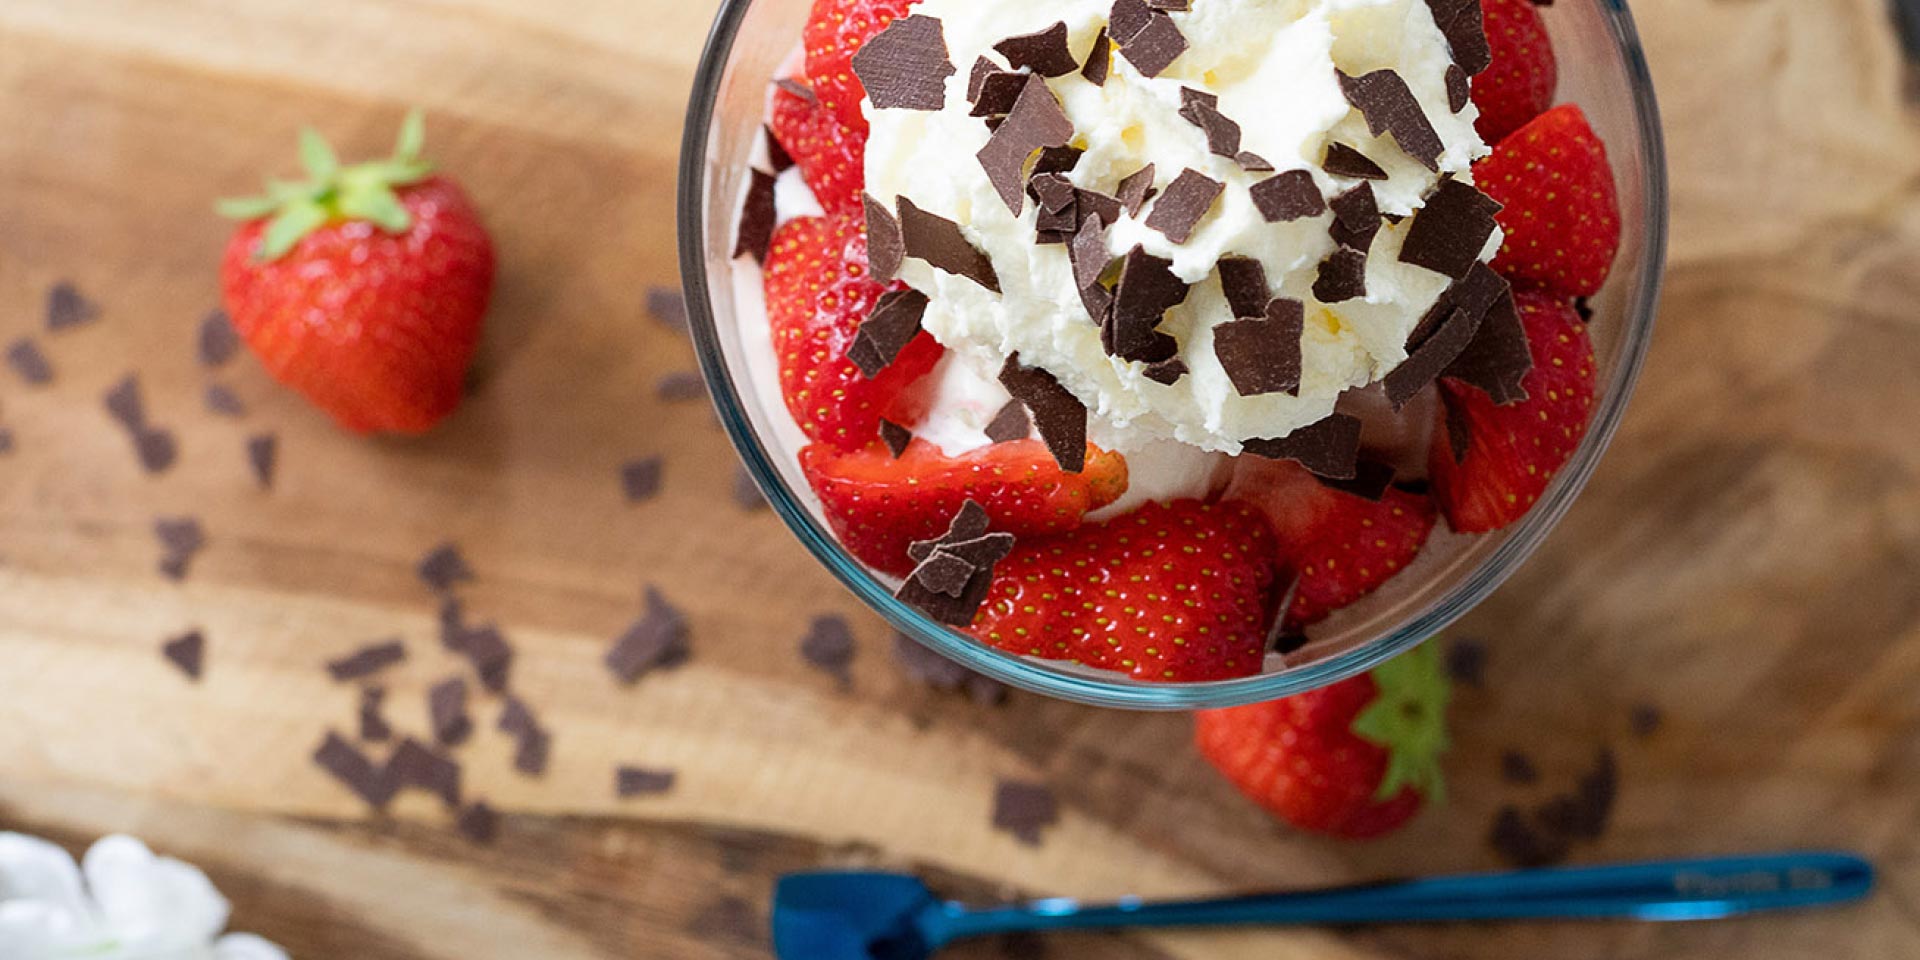 Erdbeer-Cup: Vanille Eis, frische Erdbeeren und Sahne